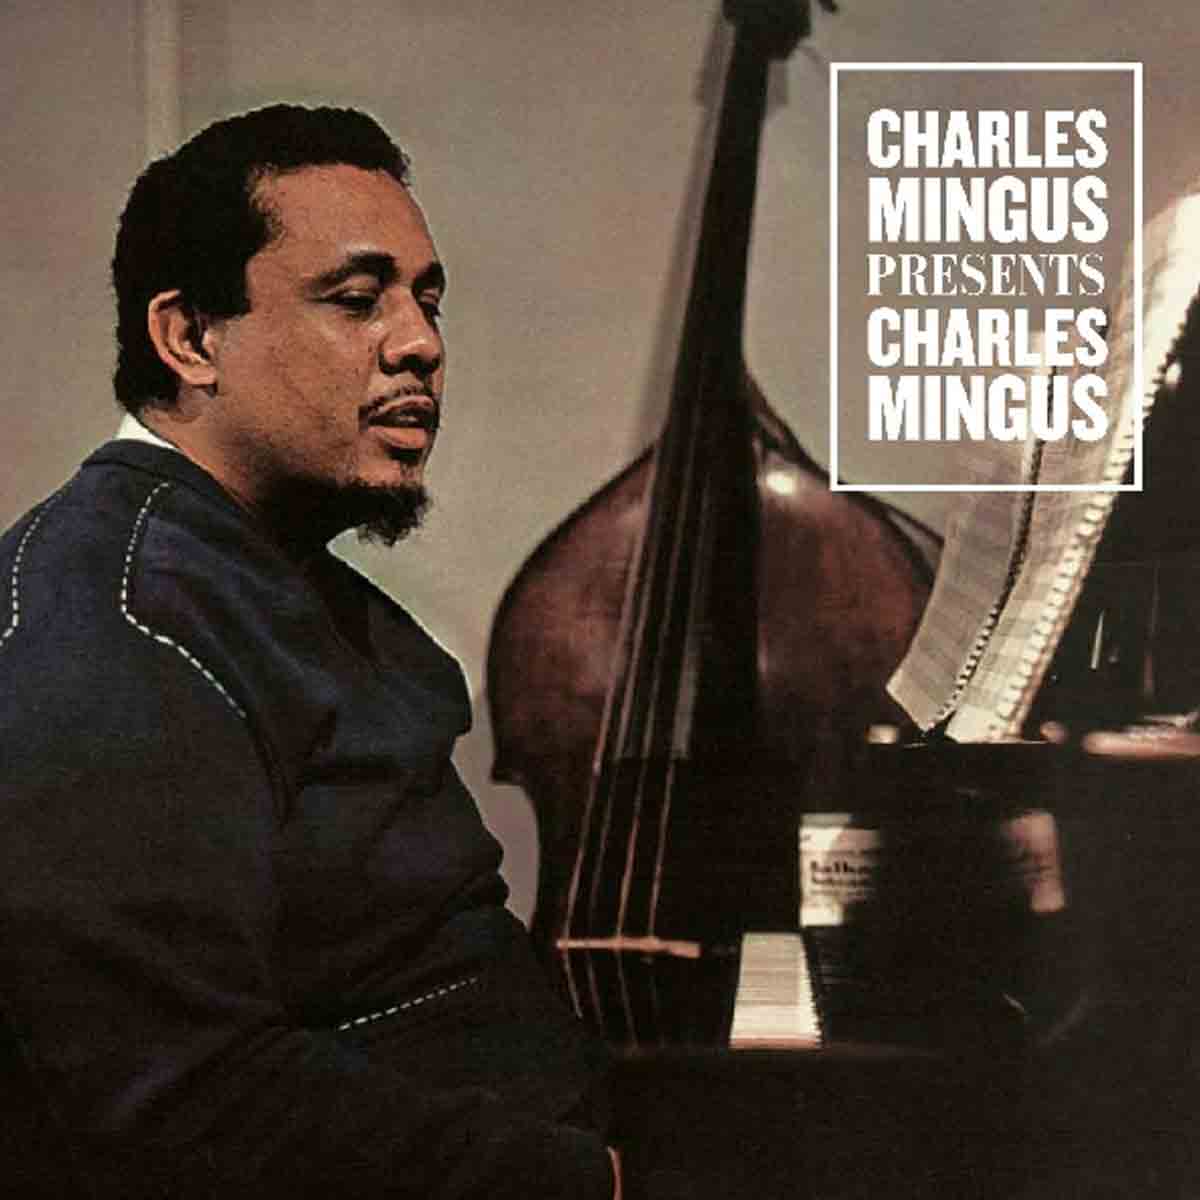 Presents Charles Mingus